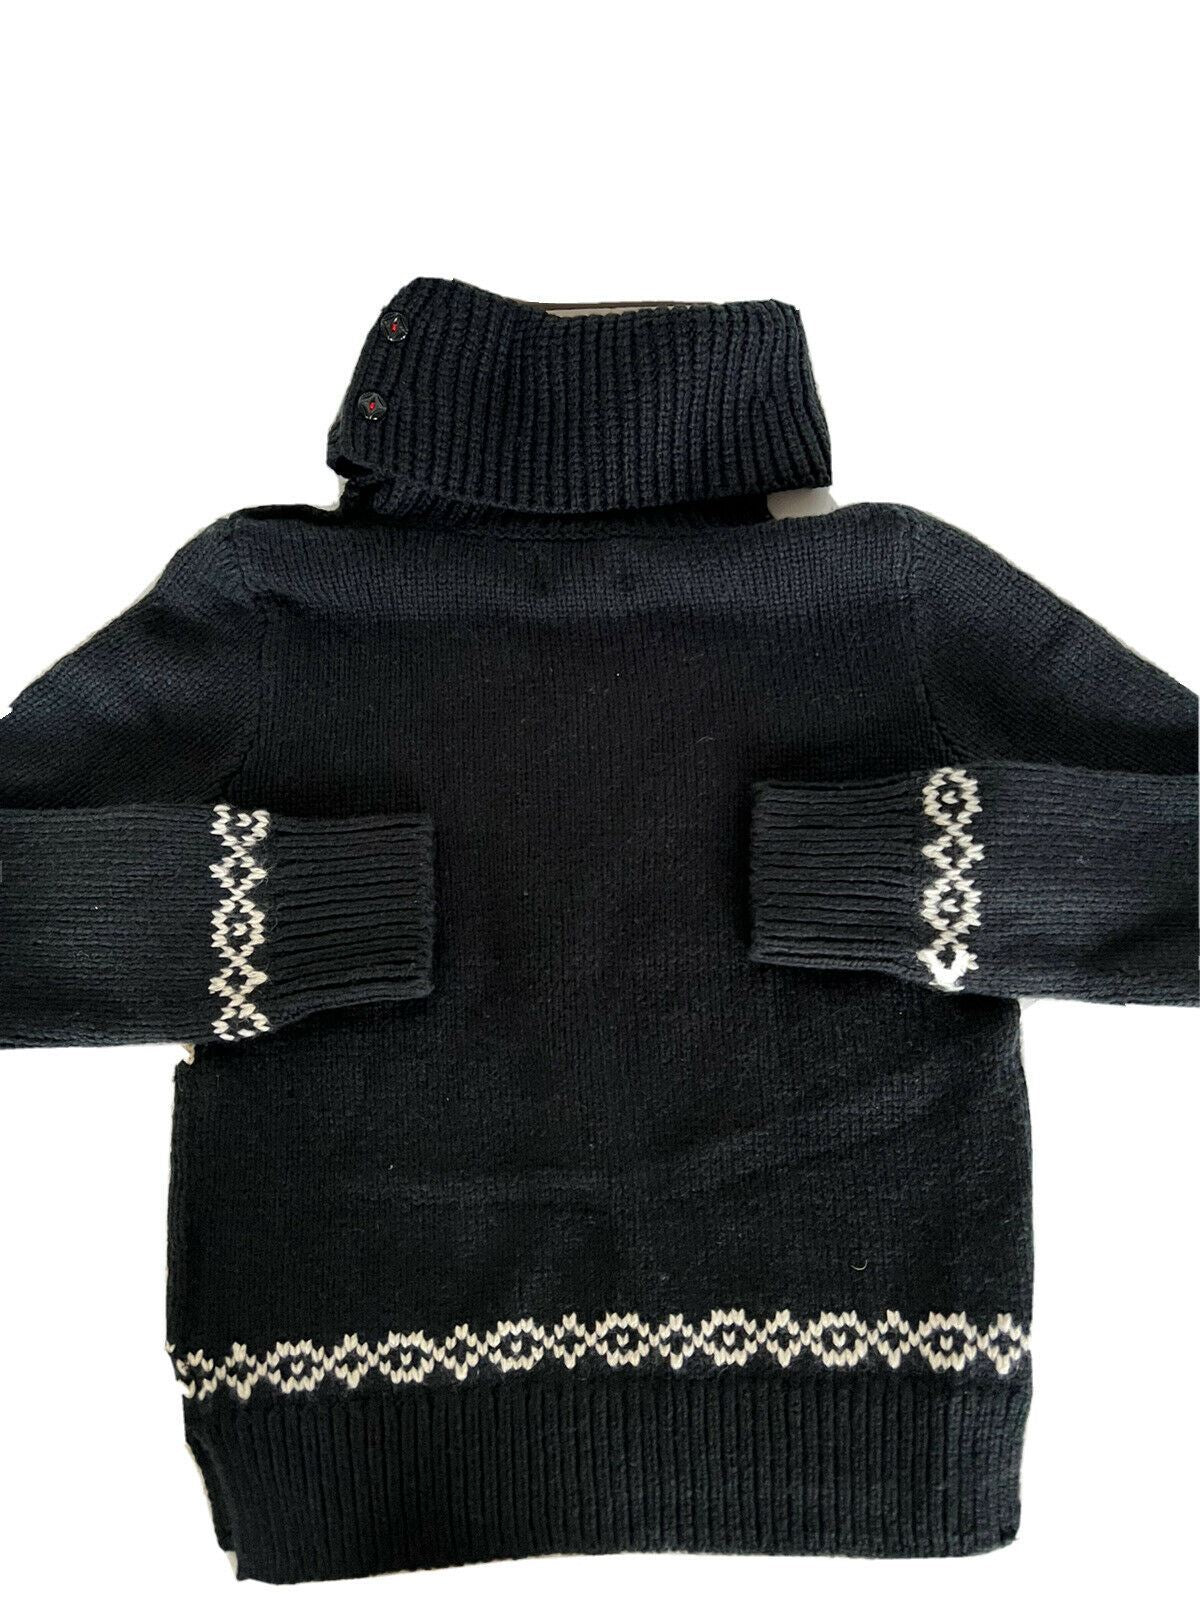 Neu mit Etikett: 145 $ Polo Ralph Lauren Mädchen-Pullover in Schwarz, Snow Soft, Größe S (7)